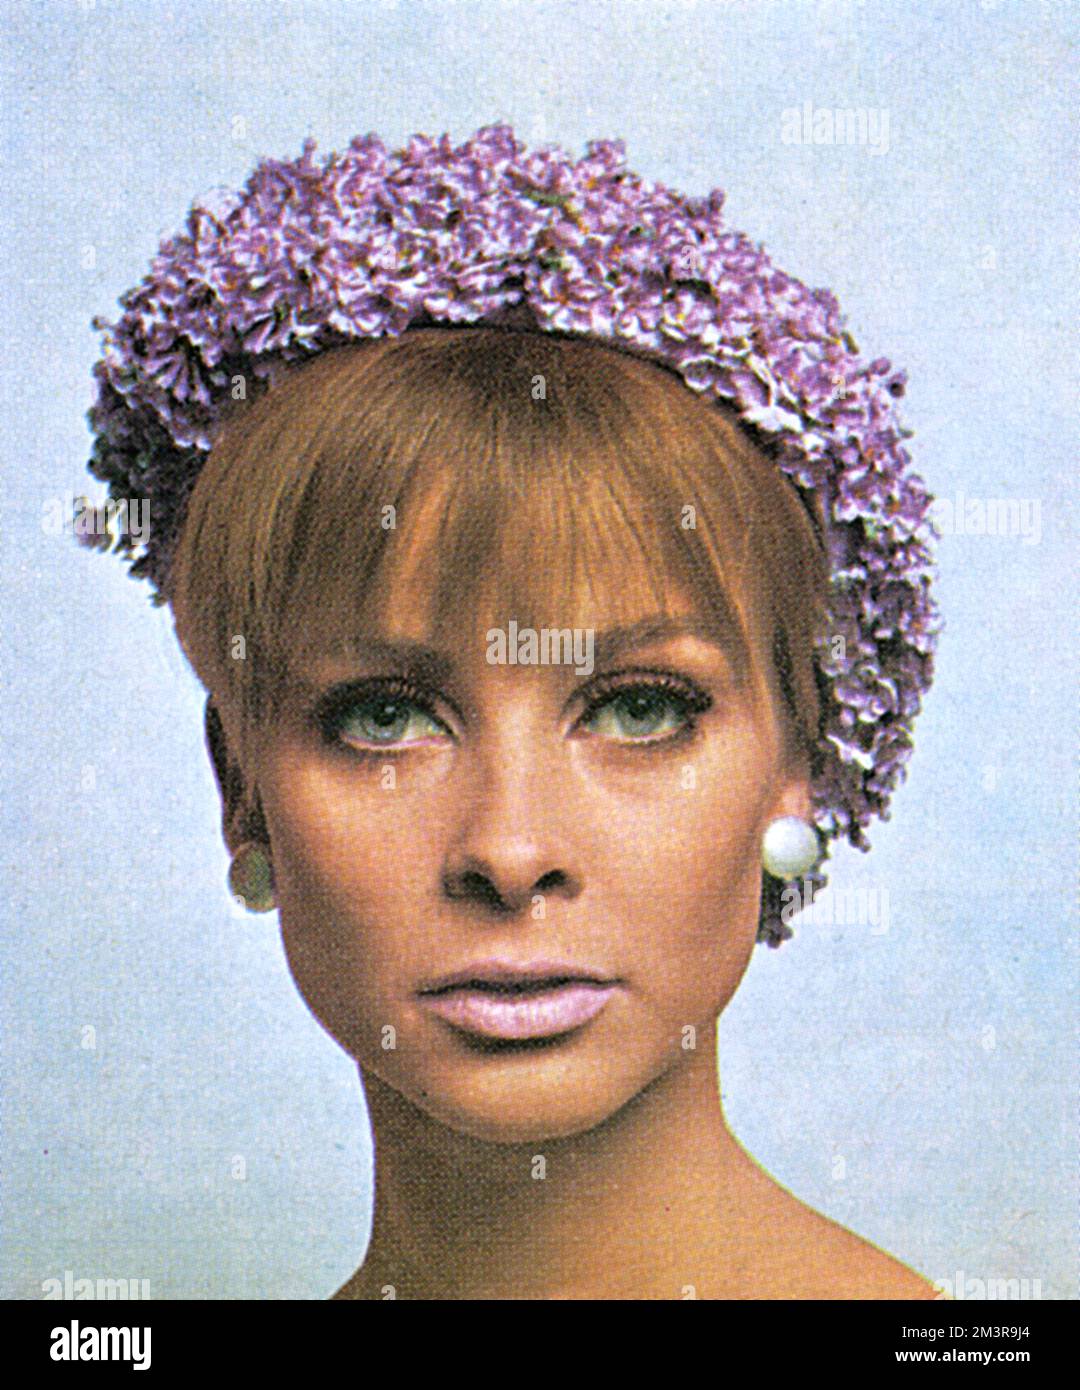 Modèle portant un béret de Pâques recouvert de fleurs lilas. Porté avec maquillage par facteur max. Date: 1966 Banque D'Images